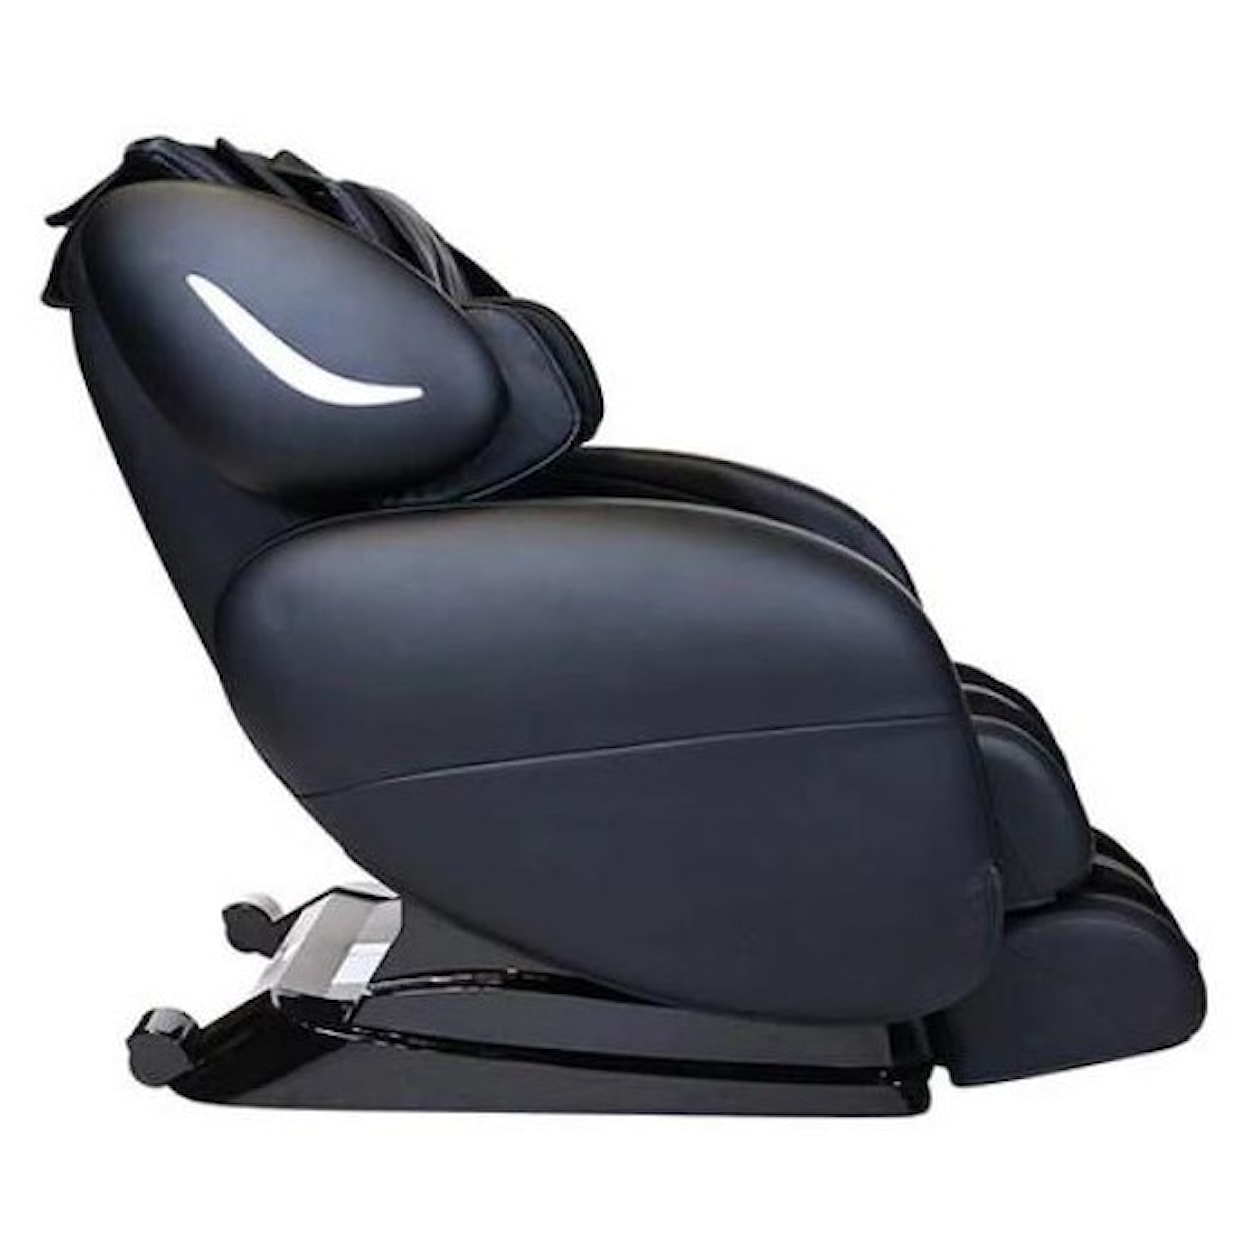 Infinity Smart Chair X3 Smart Chair X3 3D/4D Massage Chair